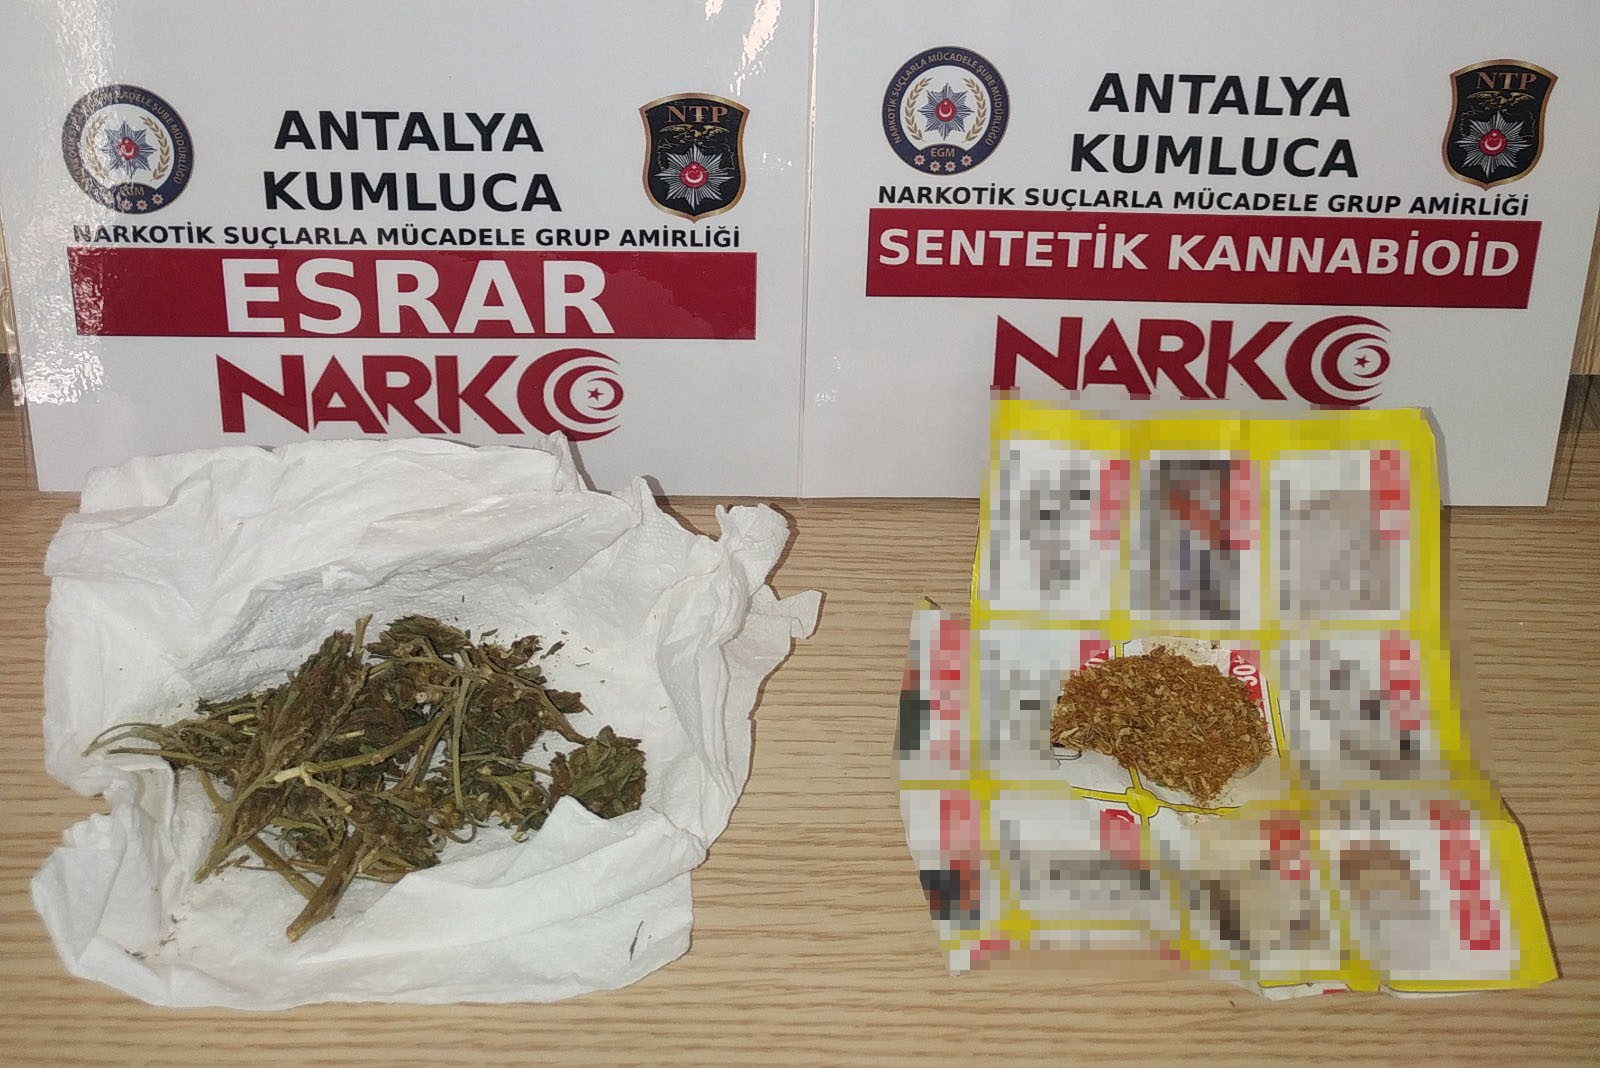 Antalya'da uyuşturucu ticareti engellendi: 8 kişi tutuklandı